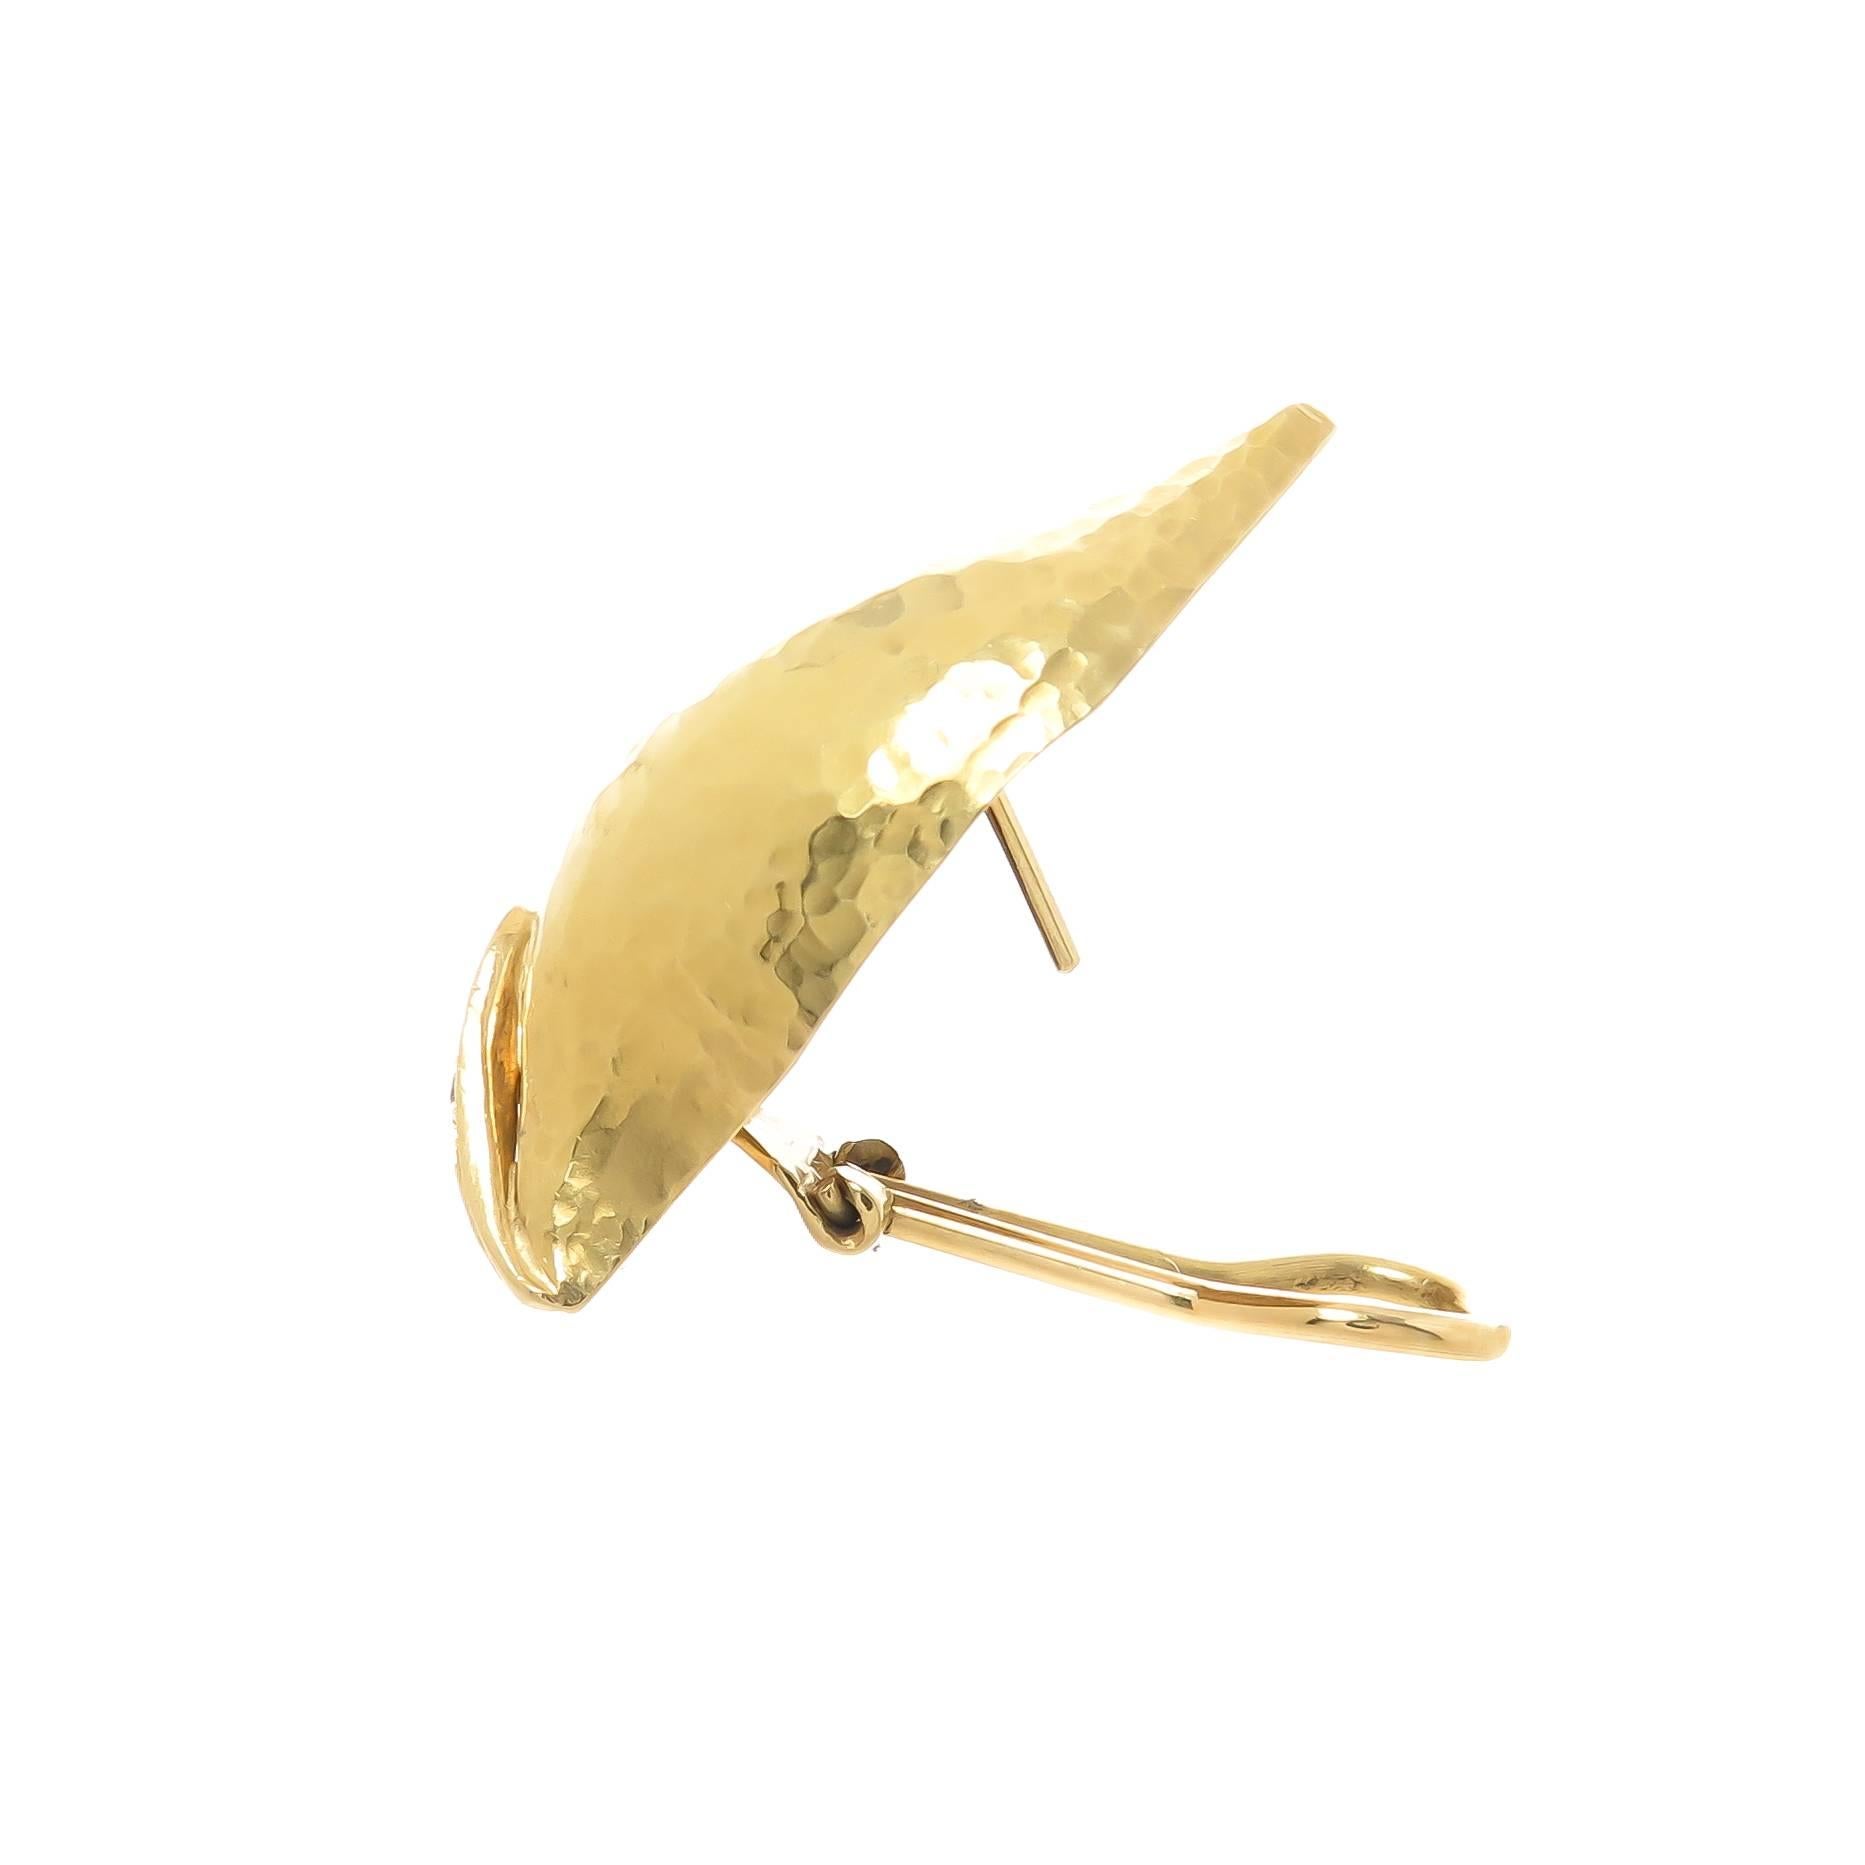 Circa 1990 Paloma Picasso for Tiffany & Company Boucles d'oreilles feuille en or jaune 18K martelé à la main, mesurant 1 1/2 pouce de longueur et 1/2 pouce de largeur. Sertie de diamants ronds et brillants totalisant 0,25 carat. Ils sont munis d'une